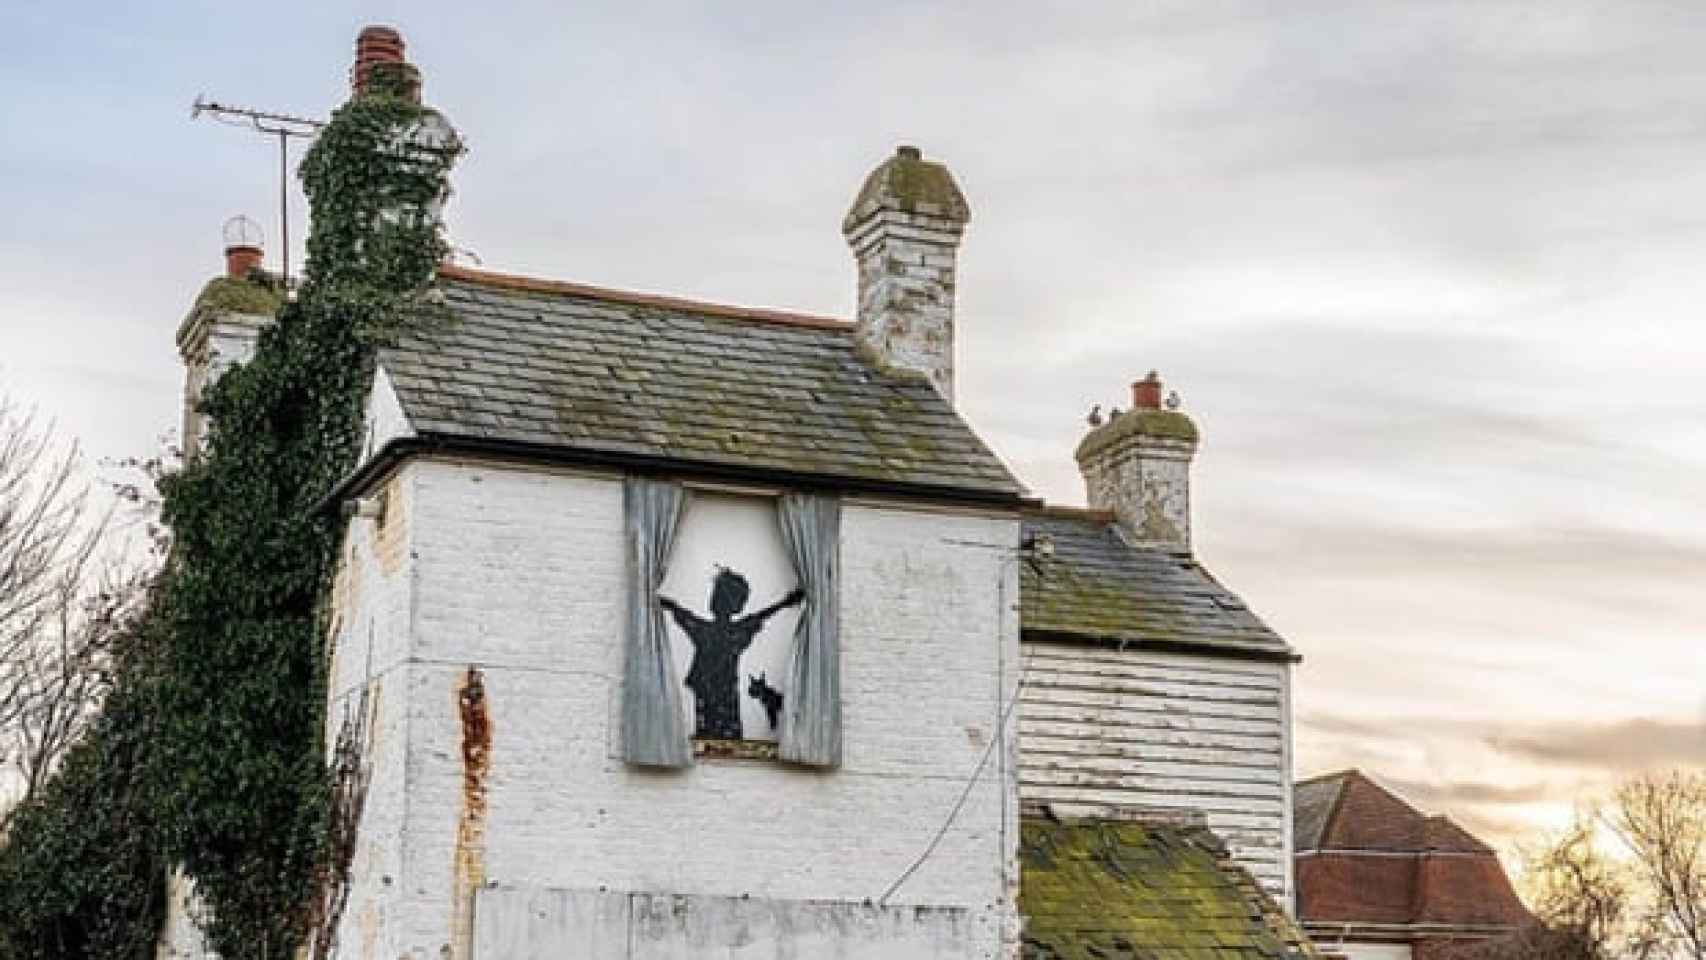 La casa de campo, con el mural de Bansky, en una imagen publicada por el artista en Instagram